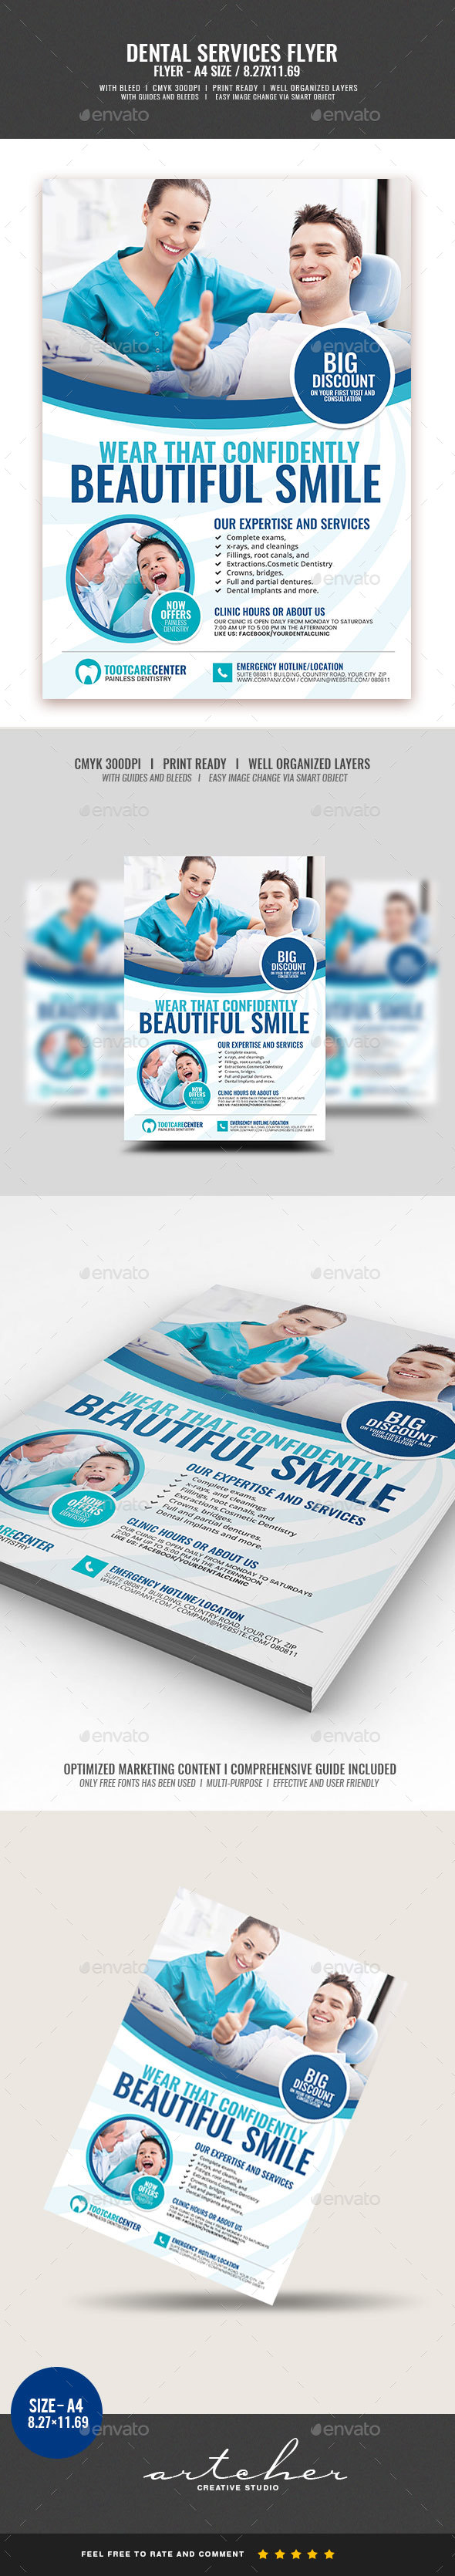 Dental Services Flyer v2